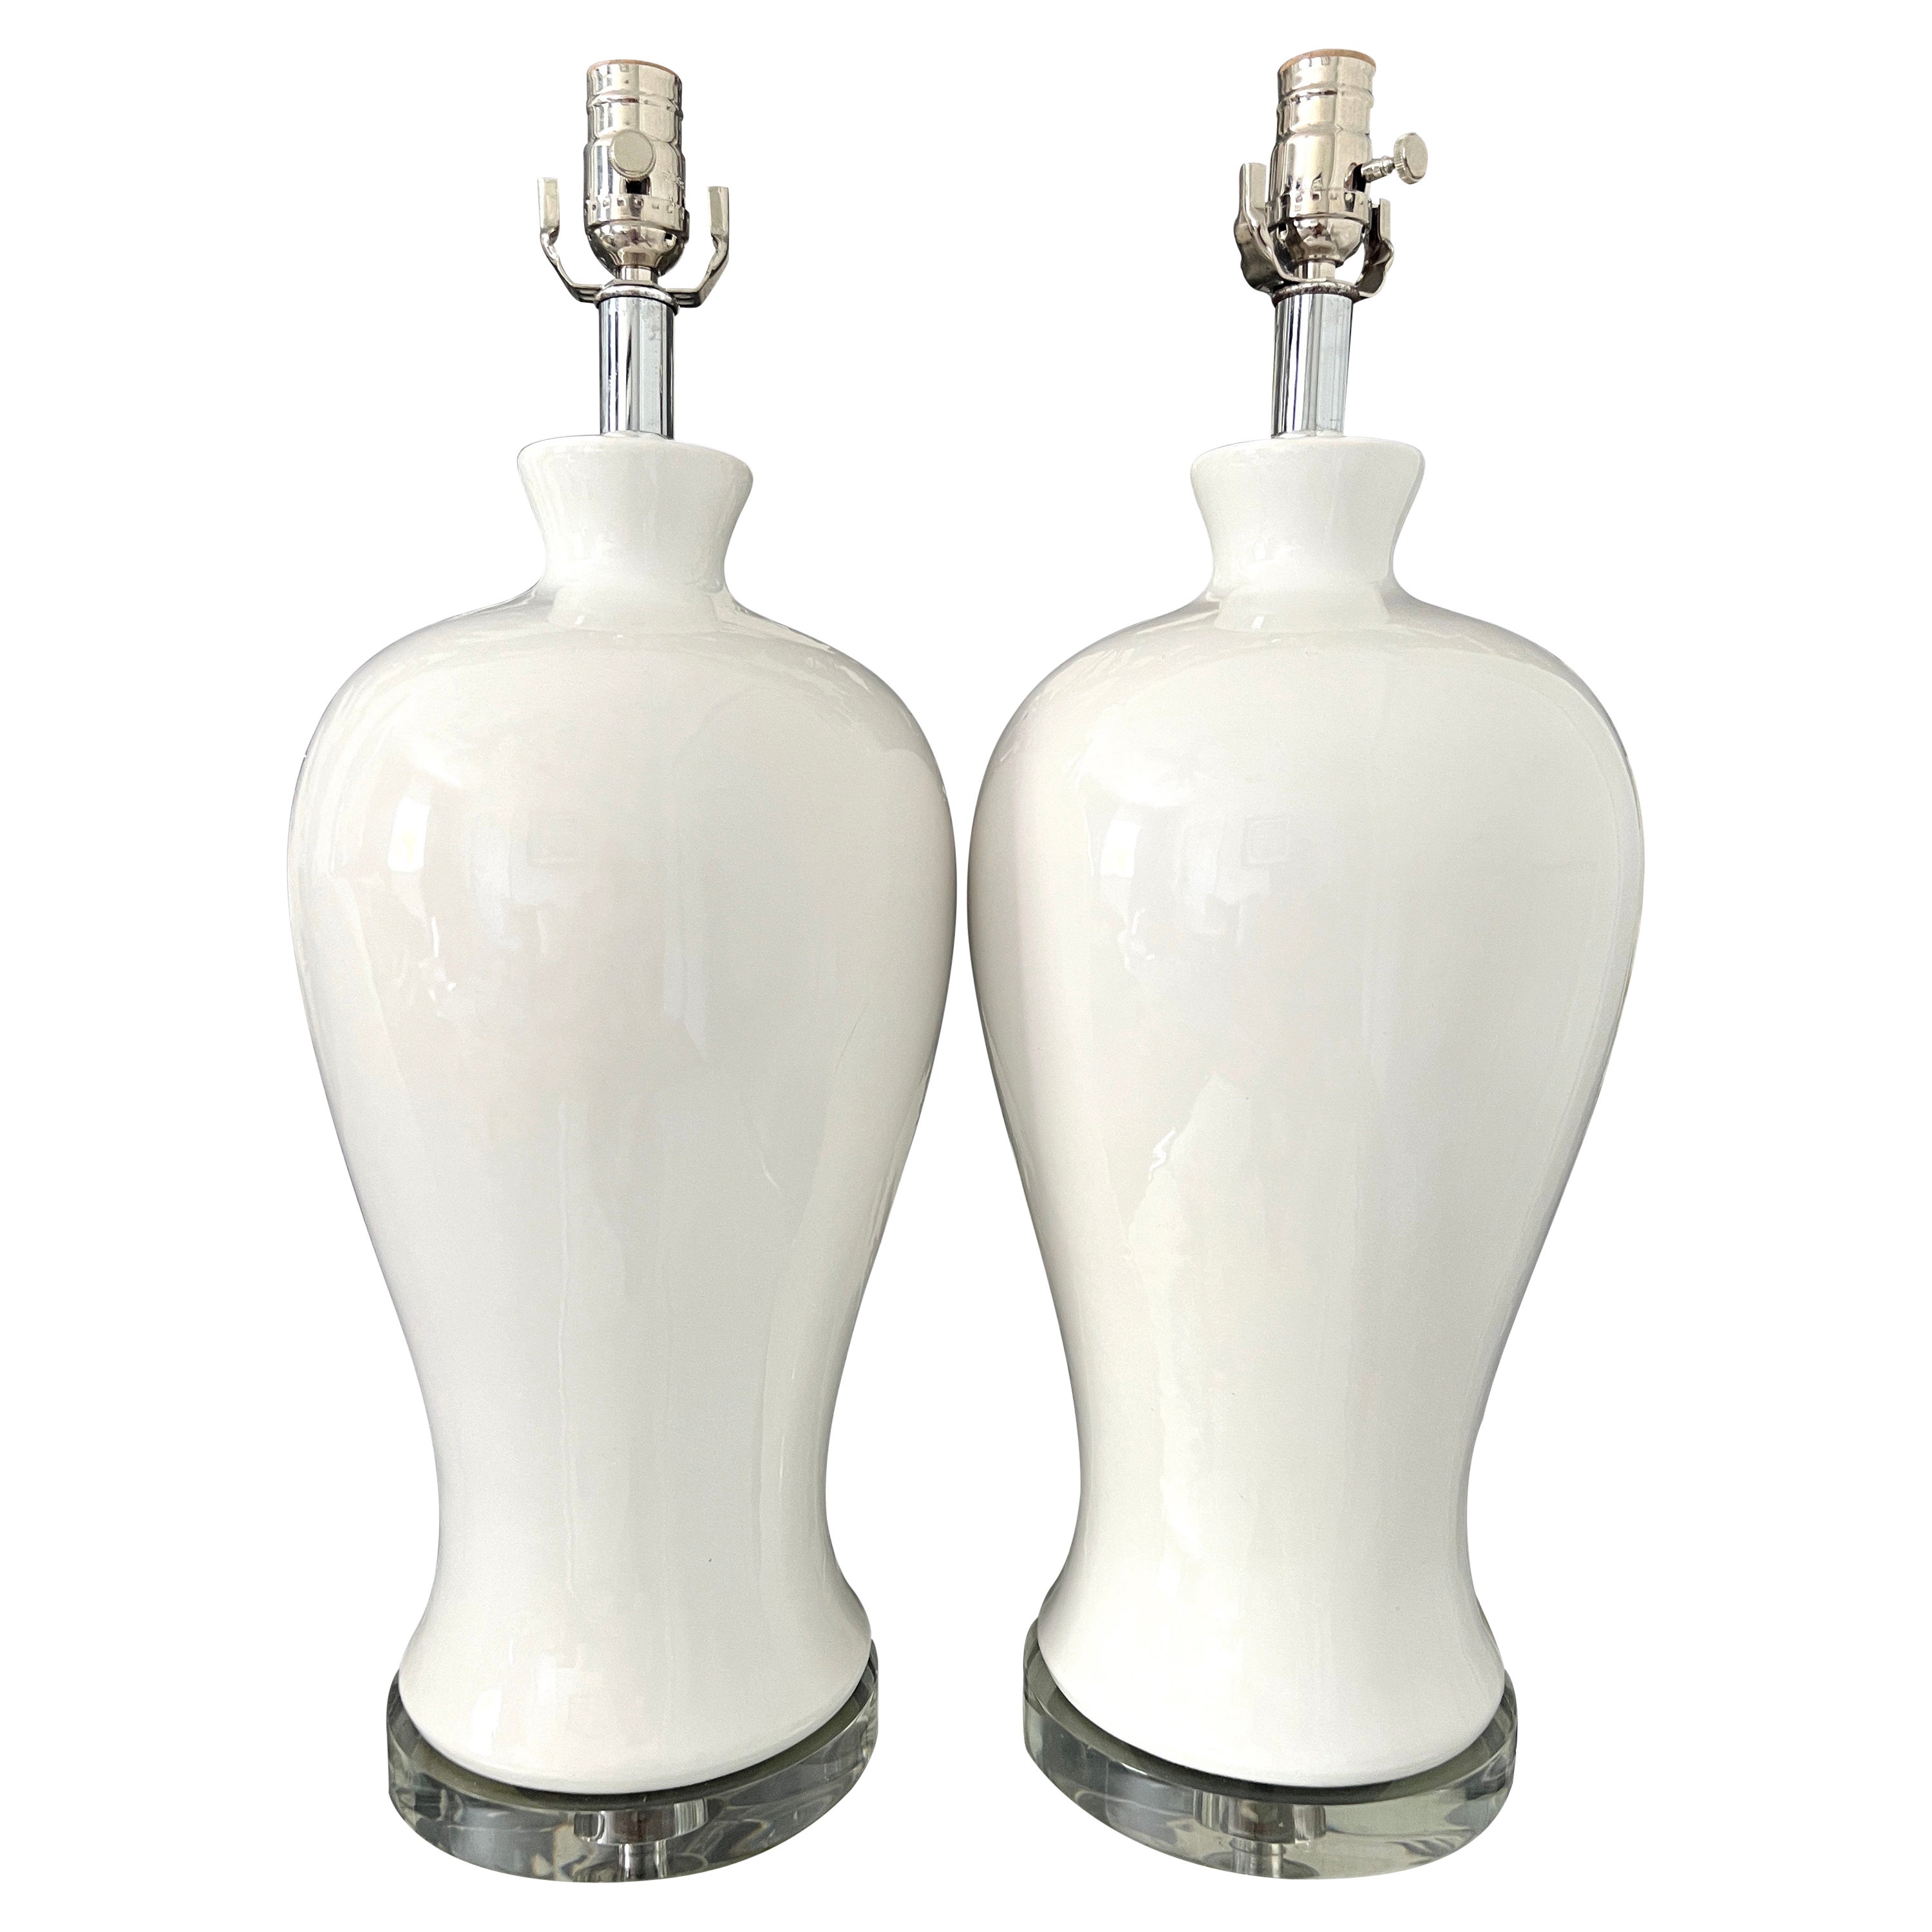 Paire de lampes urne modernistes en céramique émaillée blanche avec bases en lucite, années 1960